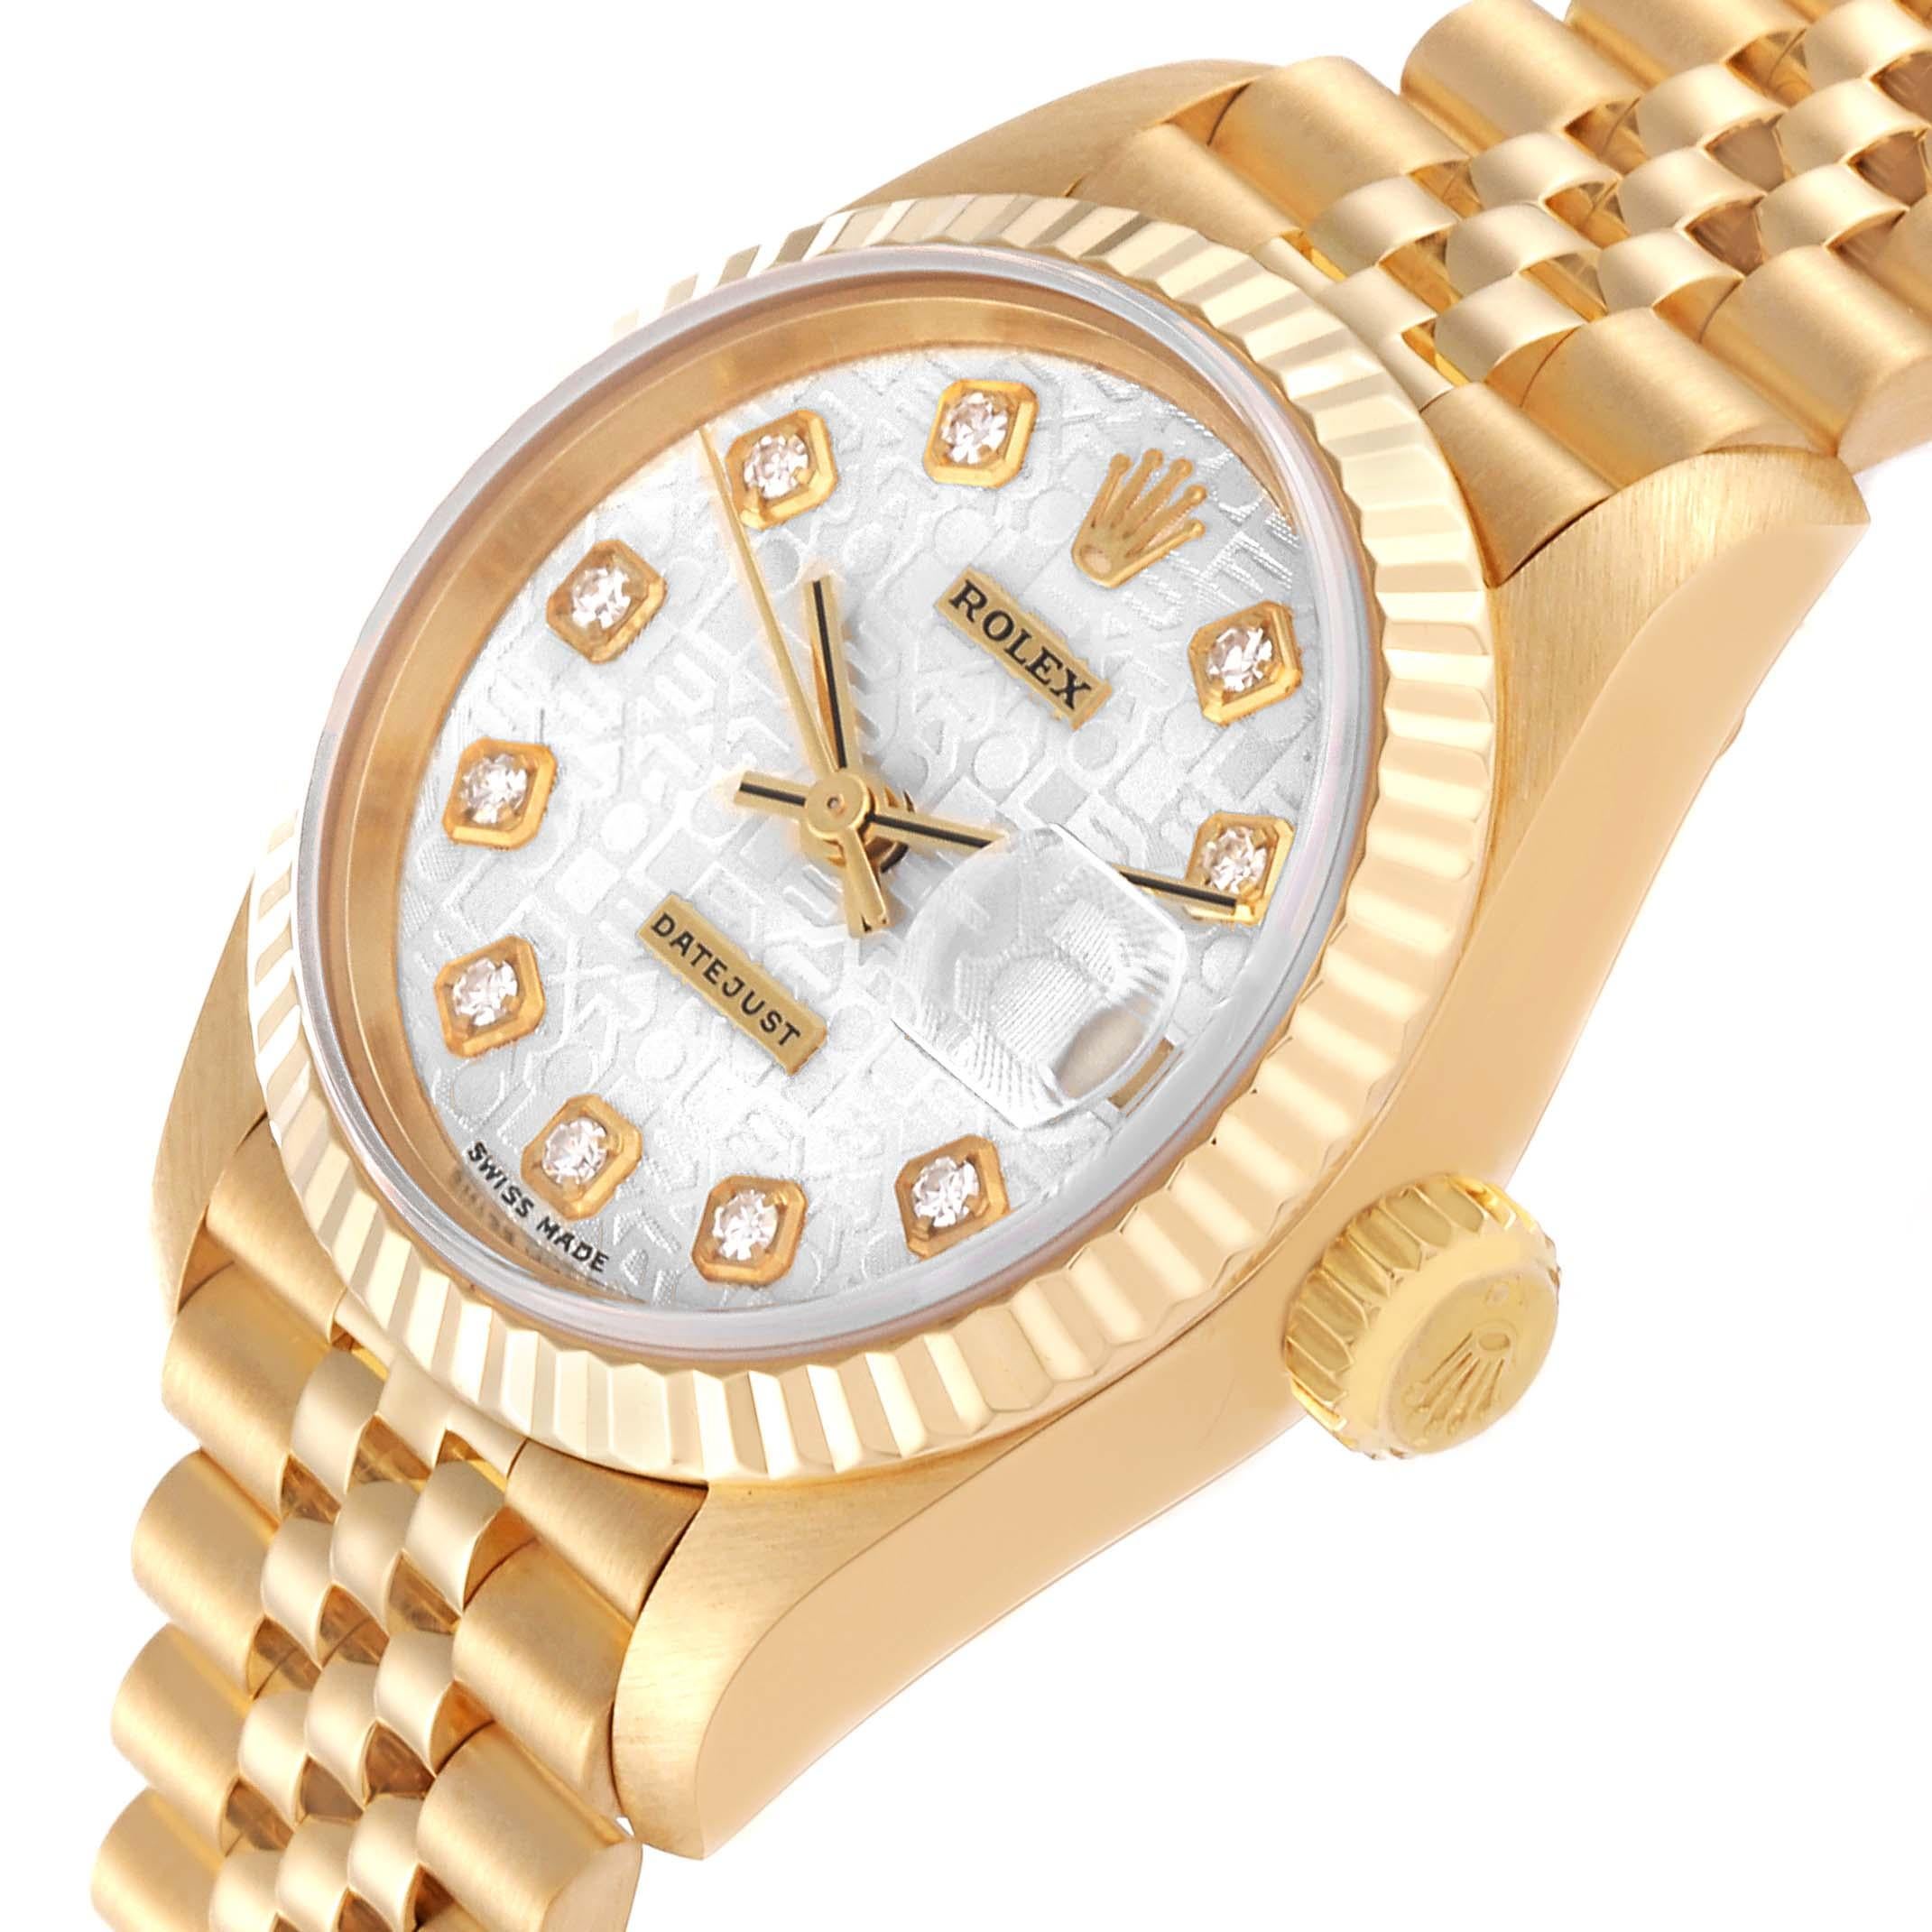 Rolex President Datejust Silver Diamond Dial Yellow Gold Ladies Watch 79178. Mouvement à remontage automatique, certifié chronomètre, avec fonction quickset pour la date. Boîtier en or jaune 18 carats de 26 mm de diamètre. Logo Rolex sur une